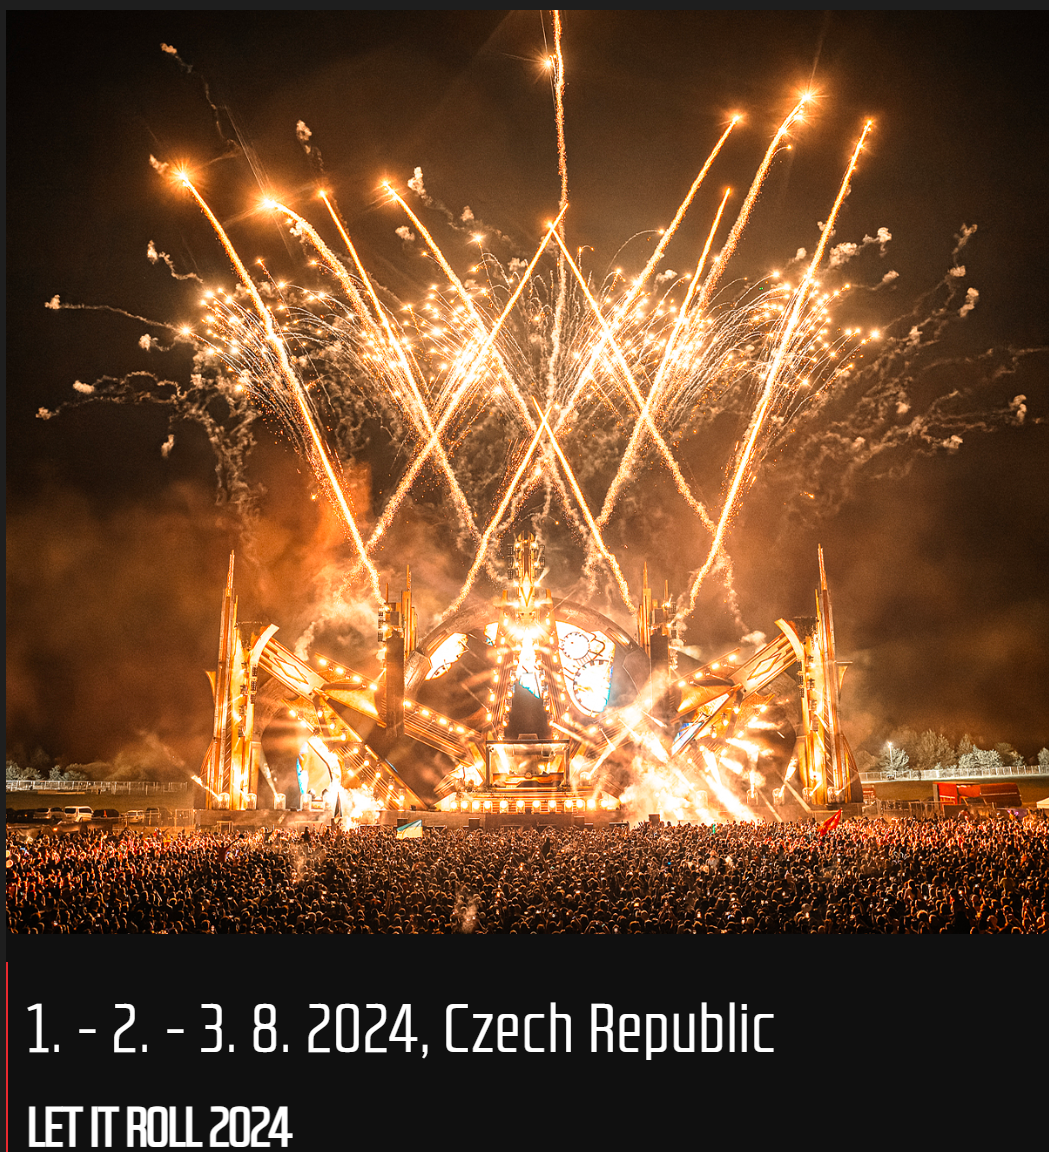 LET IT ROLL 2024 // 1. – 2. – 3. 8. 2024, CZECH REPUBLIC